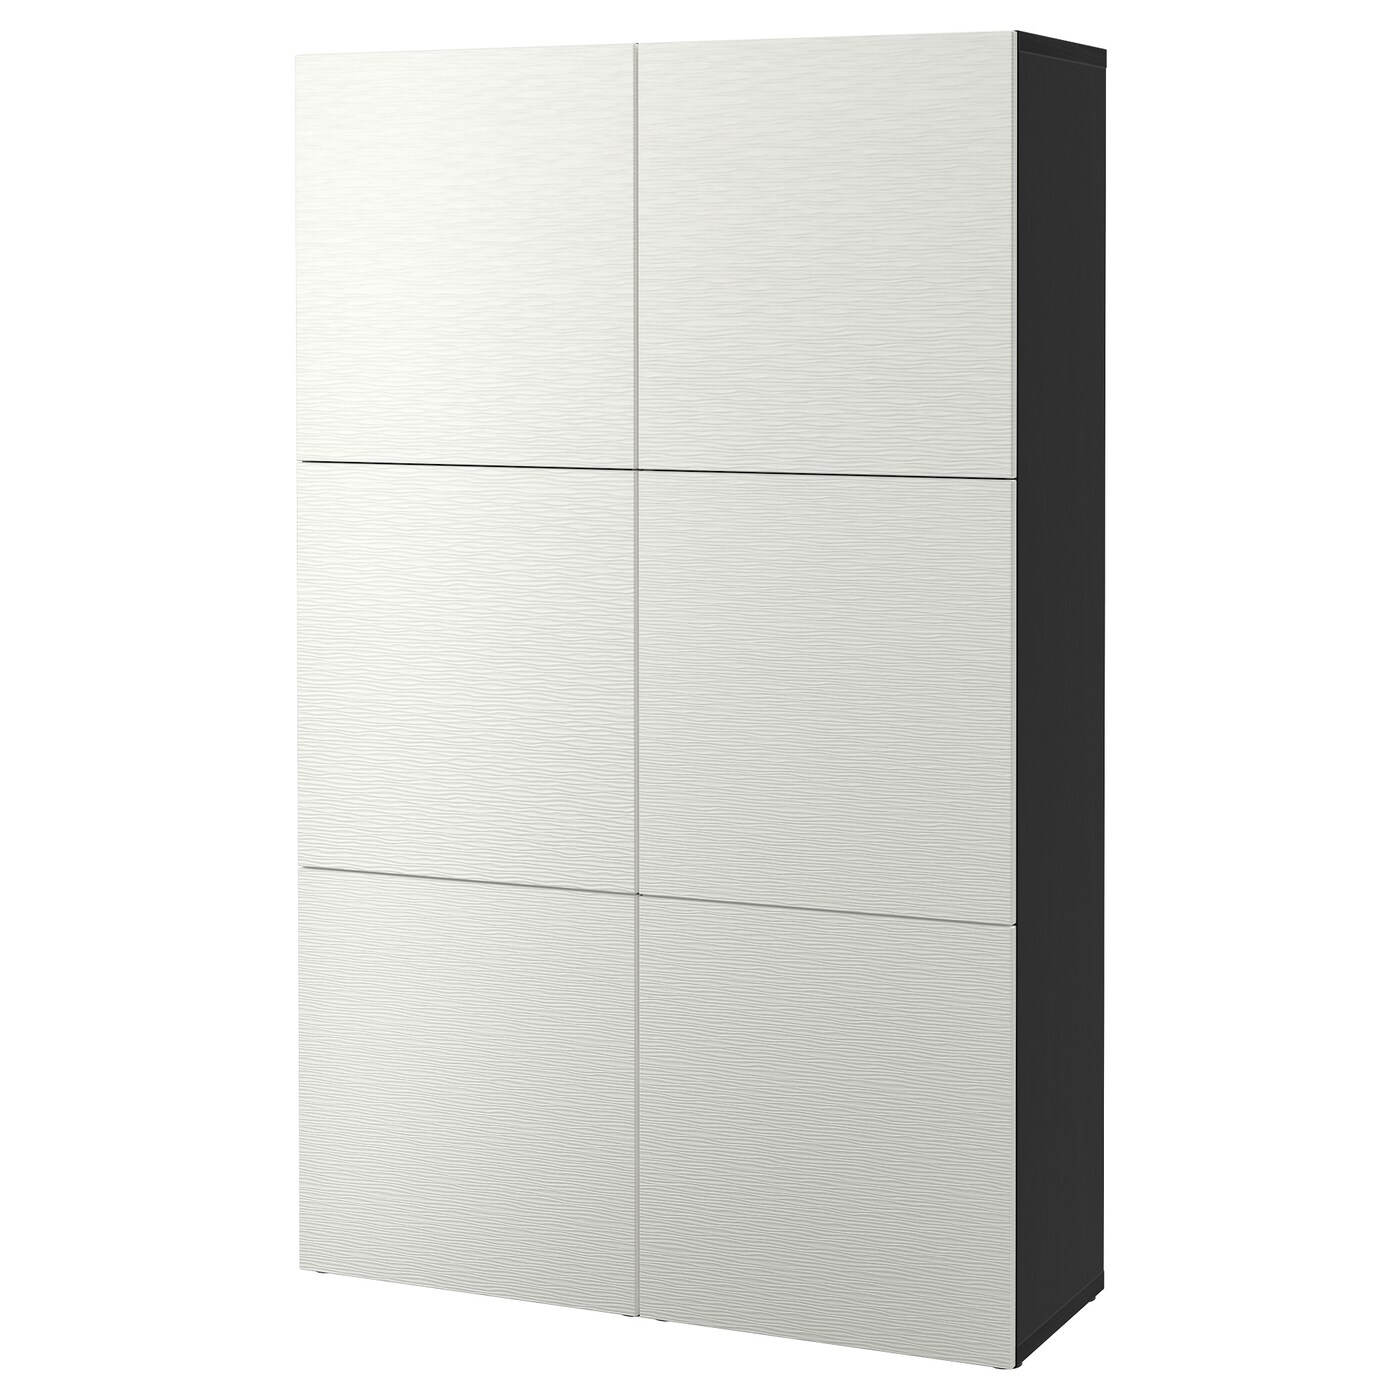 Комбинация для хранения - BESTÅ/ BESTА IKEA/ БЕСТА/БЕСТО ИКЕА, 193х120 см, белый/черный